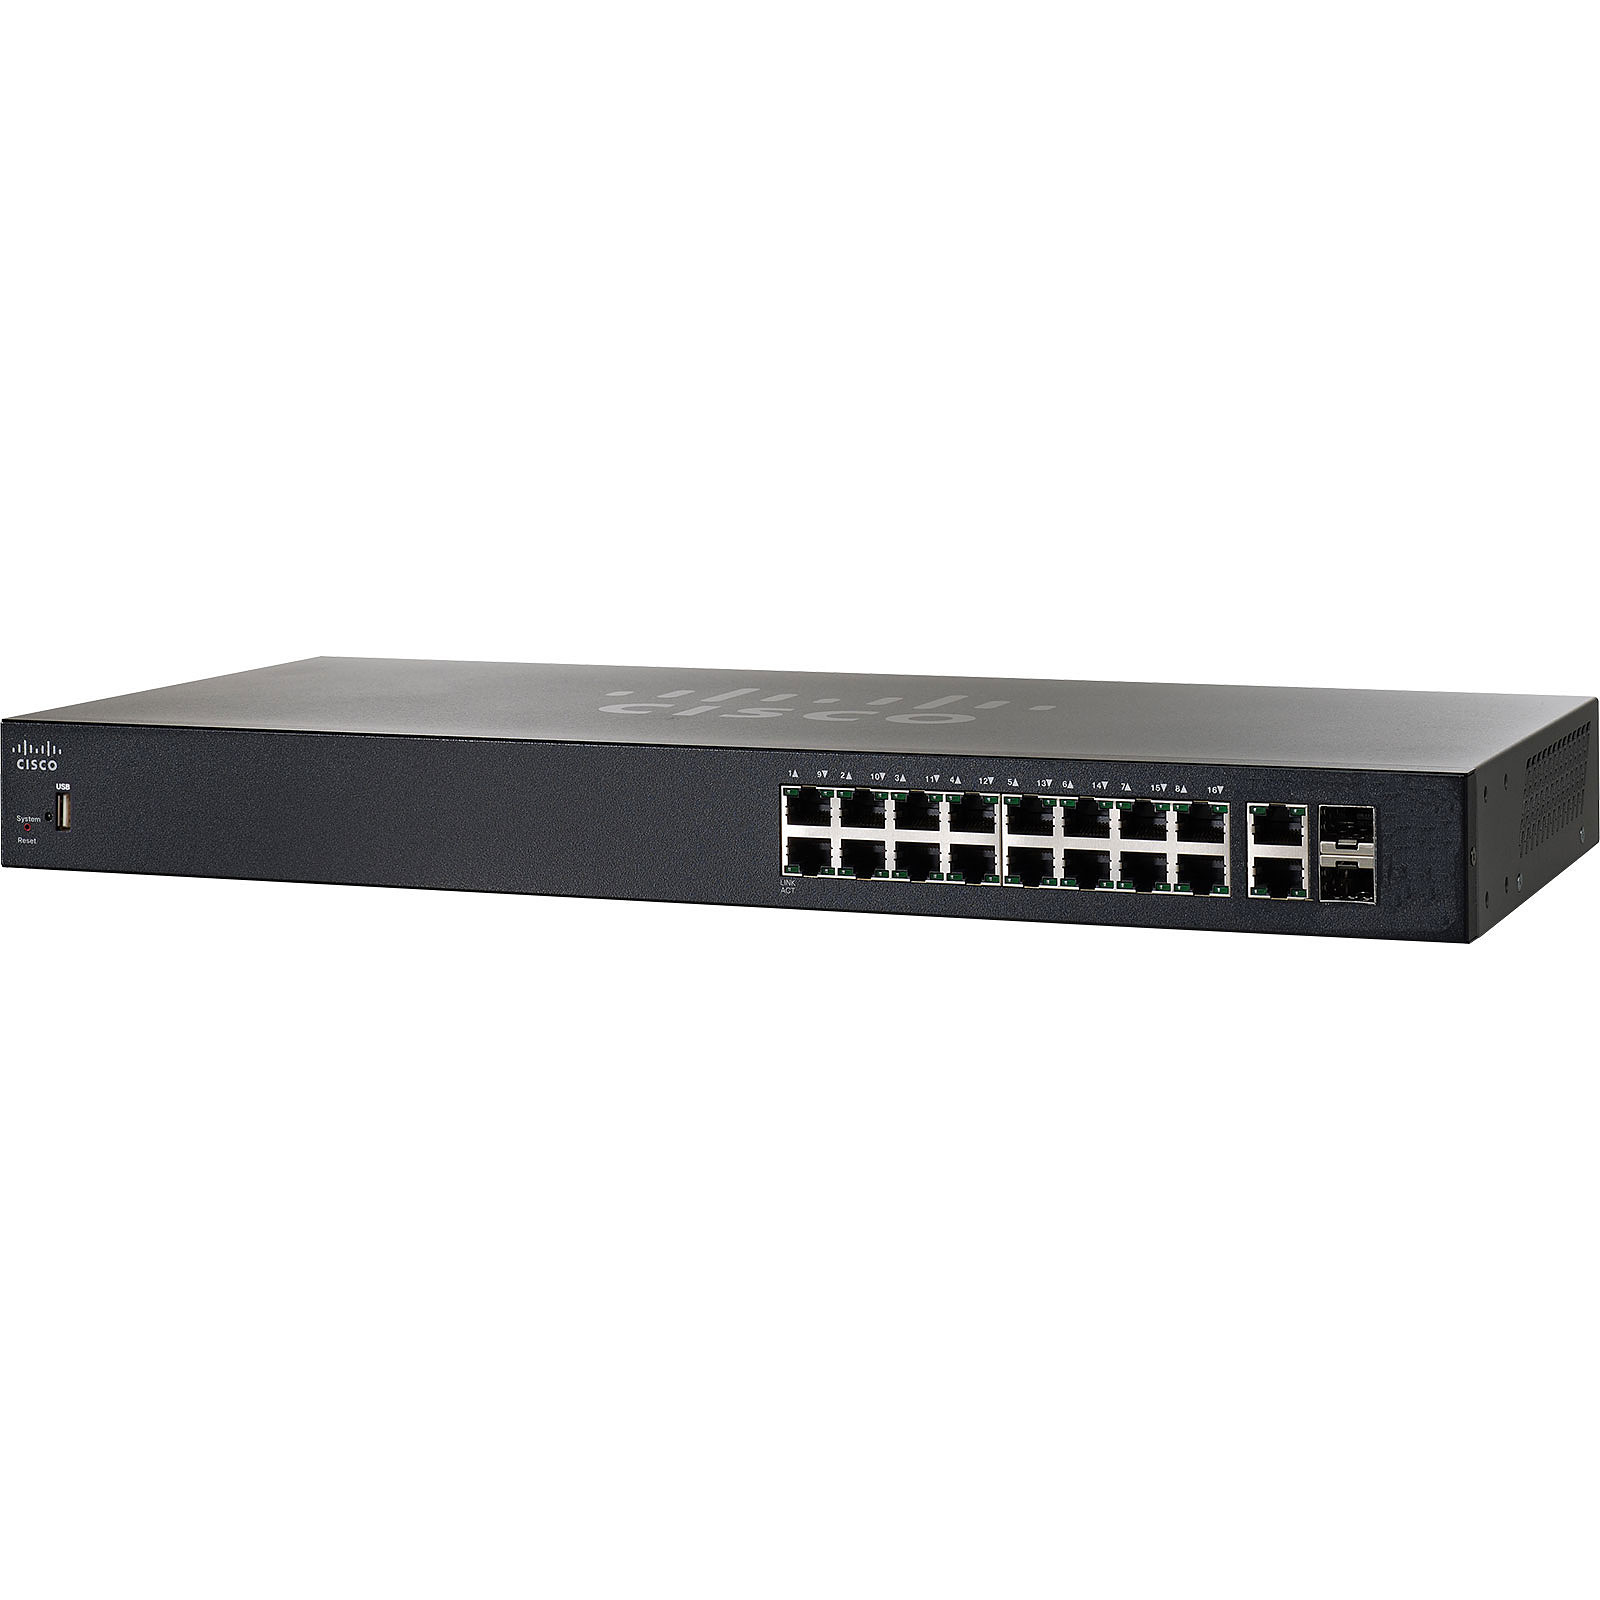 Cisco SG250-18 - Switch Cisco Systems